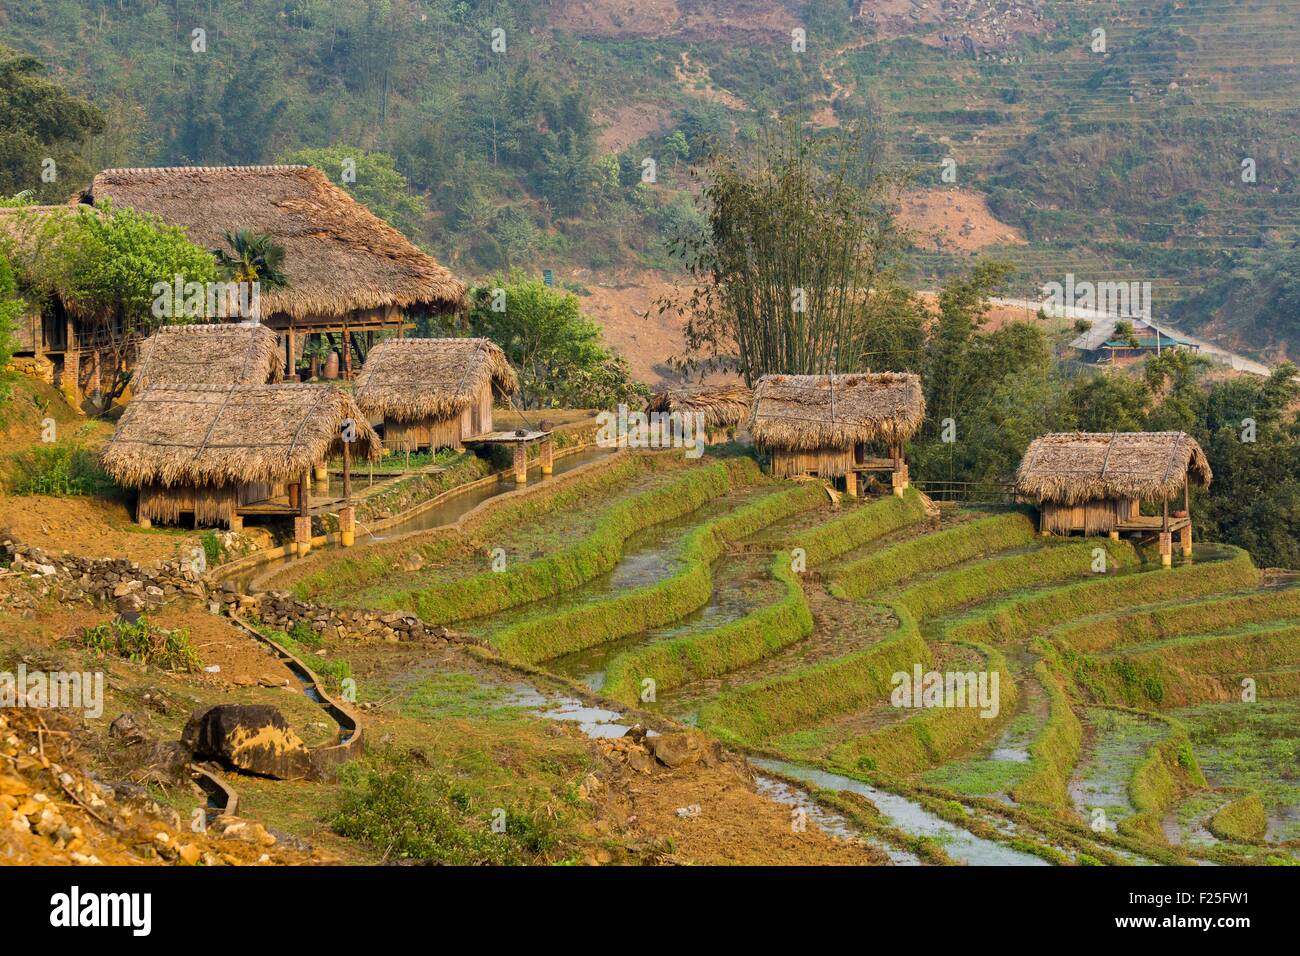 Vietnam, province de Yen Bai, Mu Cang Chai District, la Pan Tan, rizière Banque D'Images